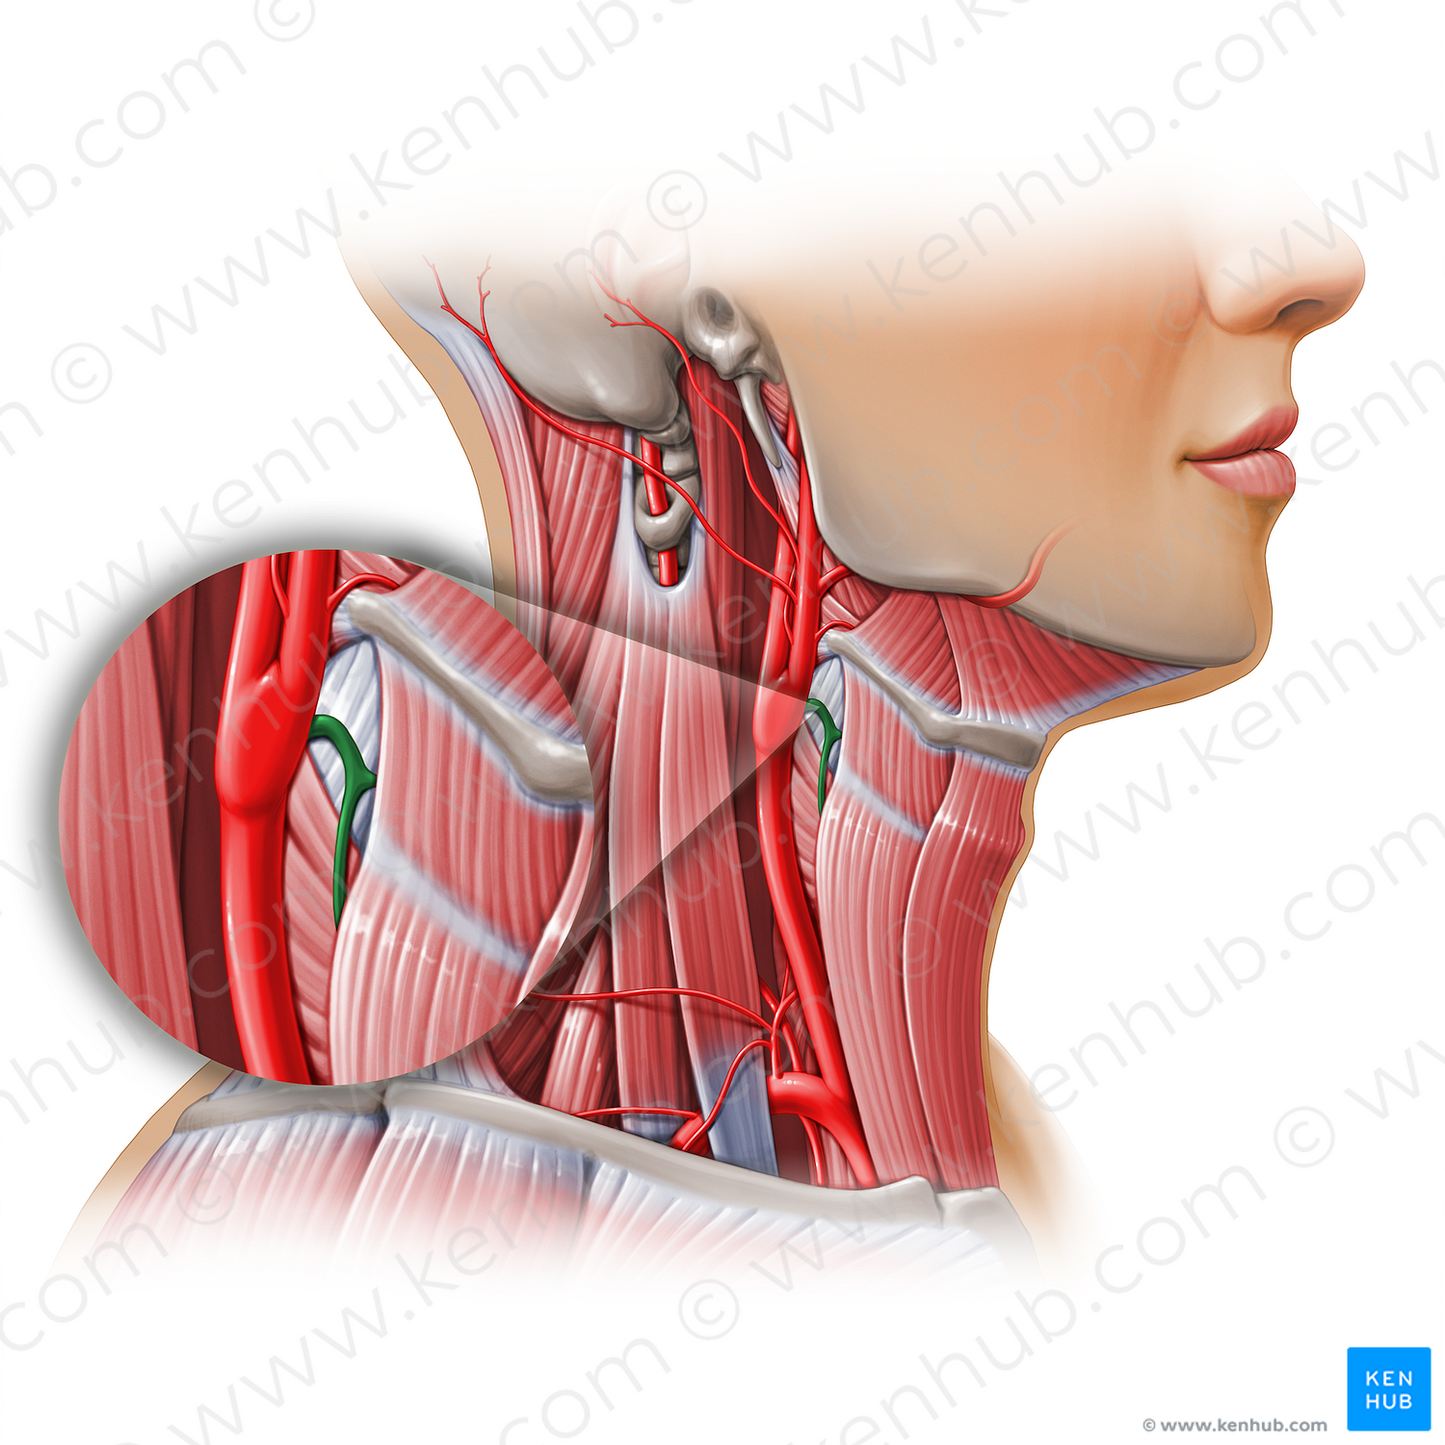 Superior thyroid artery (#11157)